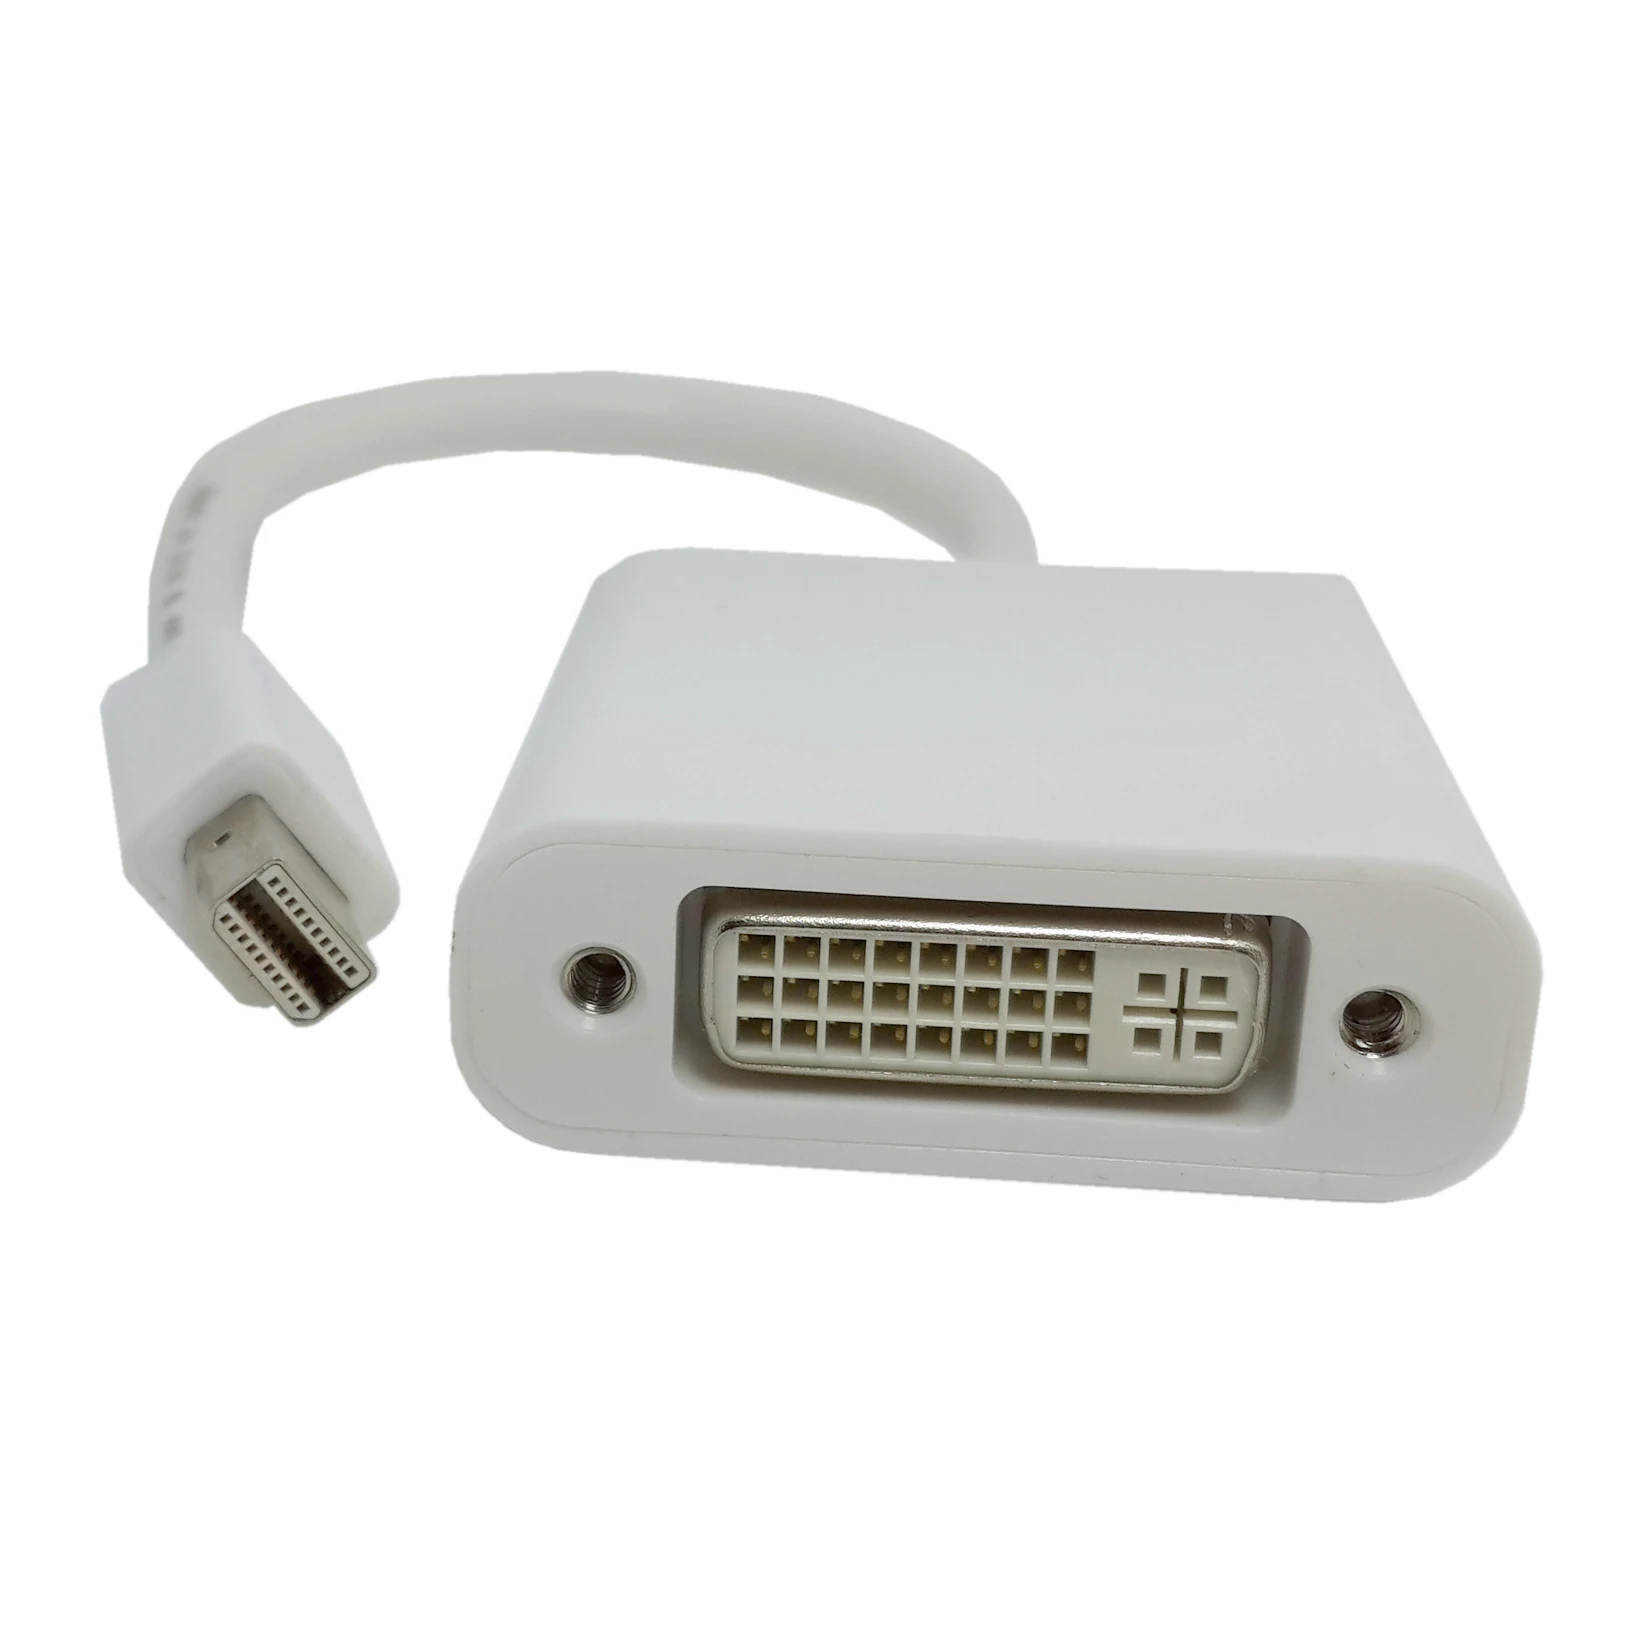 MacBook Mini DisplayPort DP to DVI Audio Video Cable